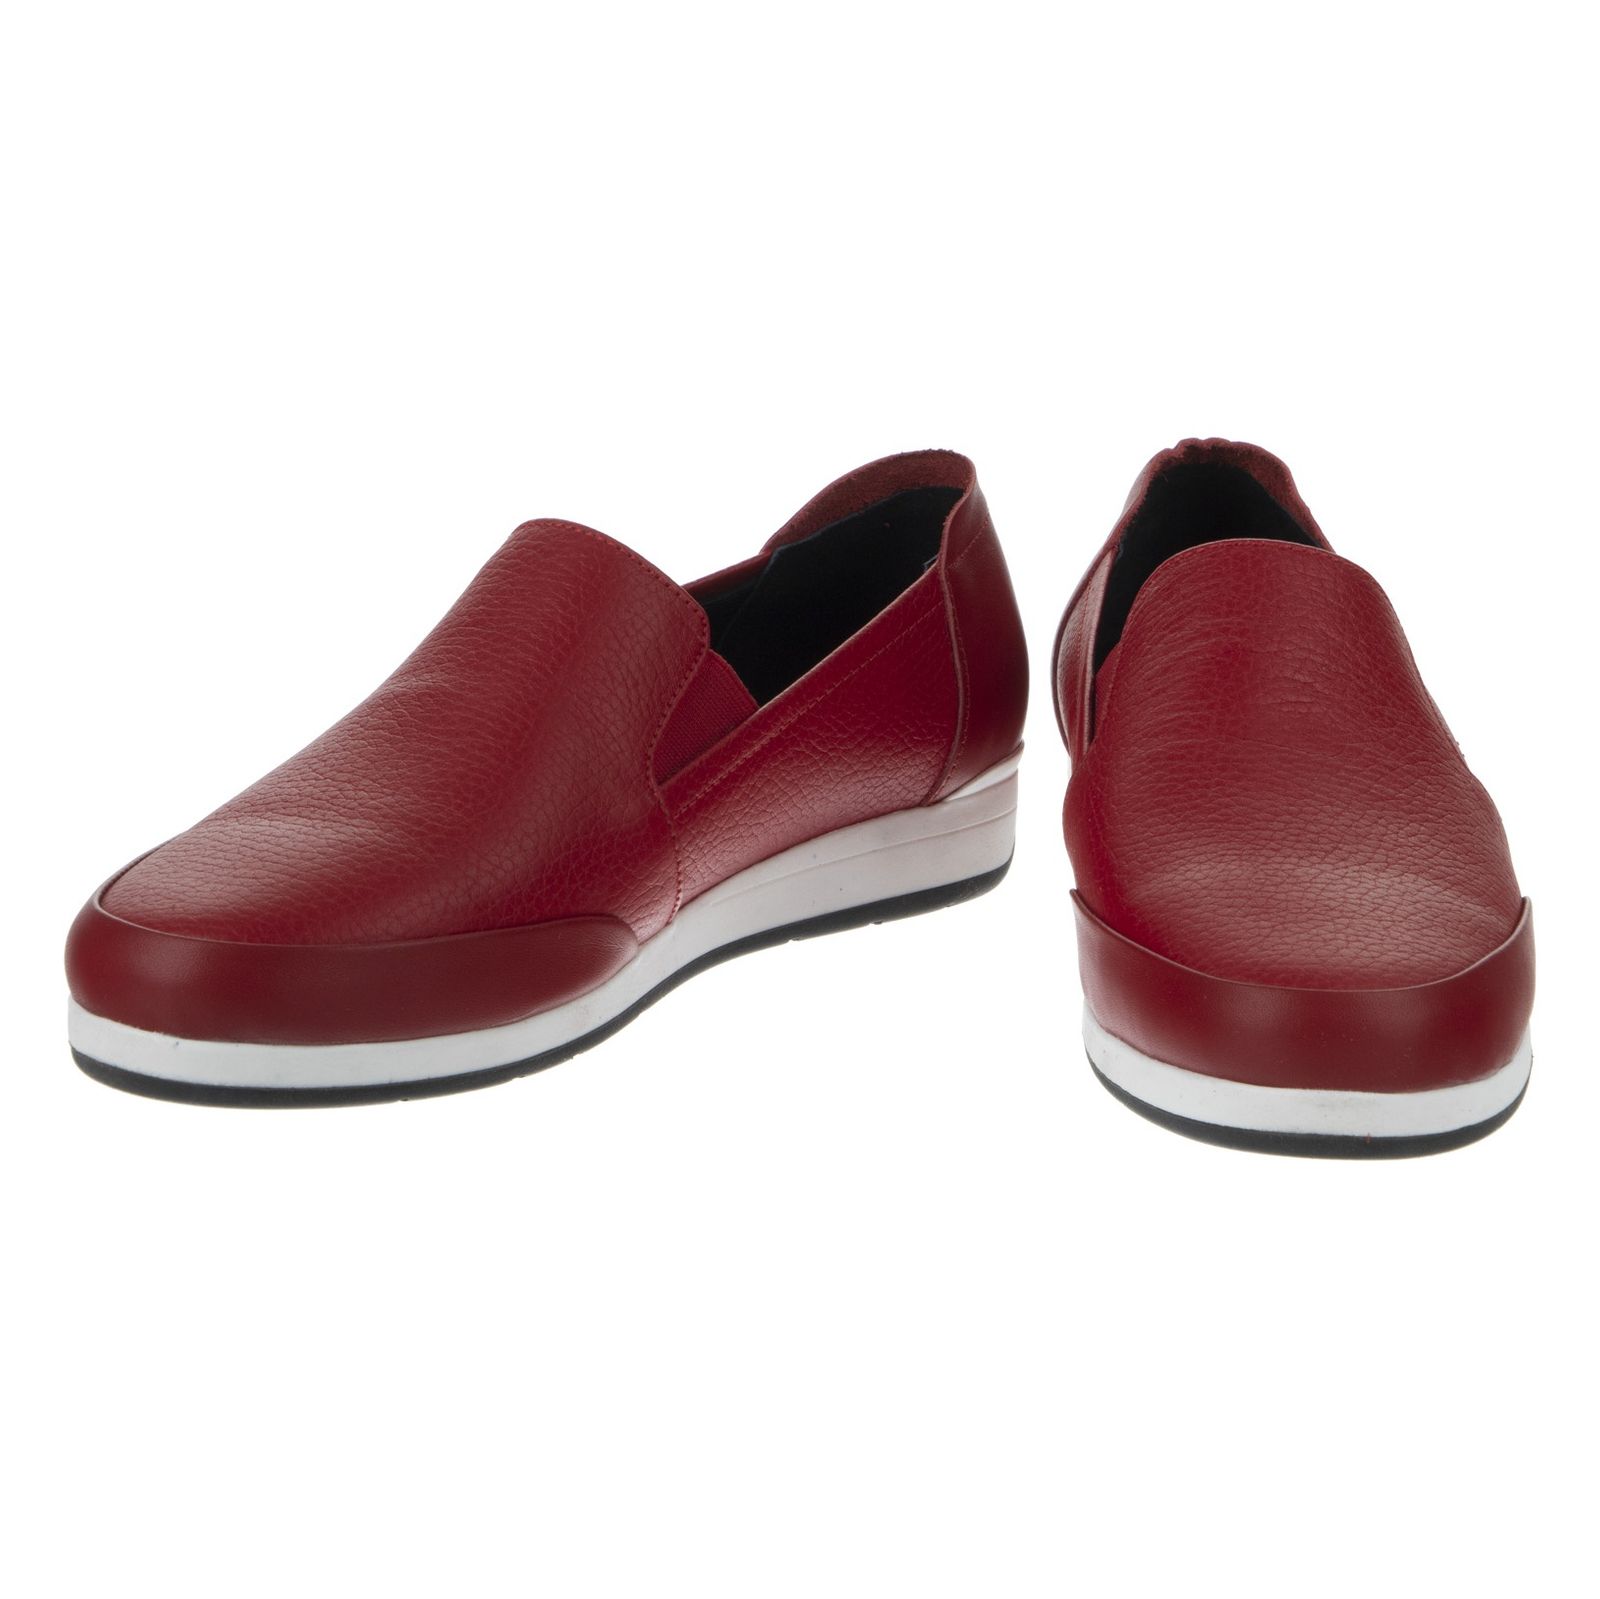 کفش روزمره زنانه شیفر مدل 5275A-102 - قرمز - 5